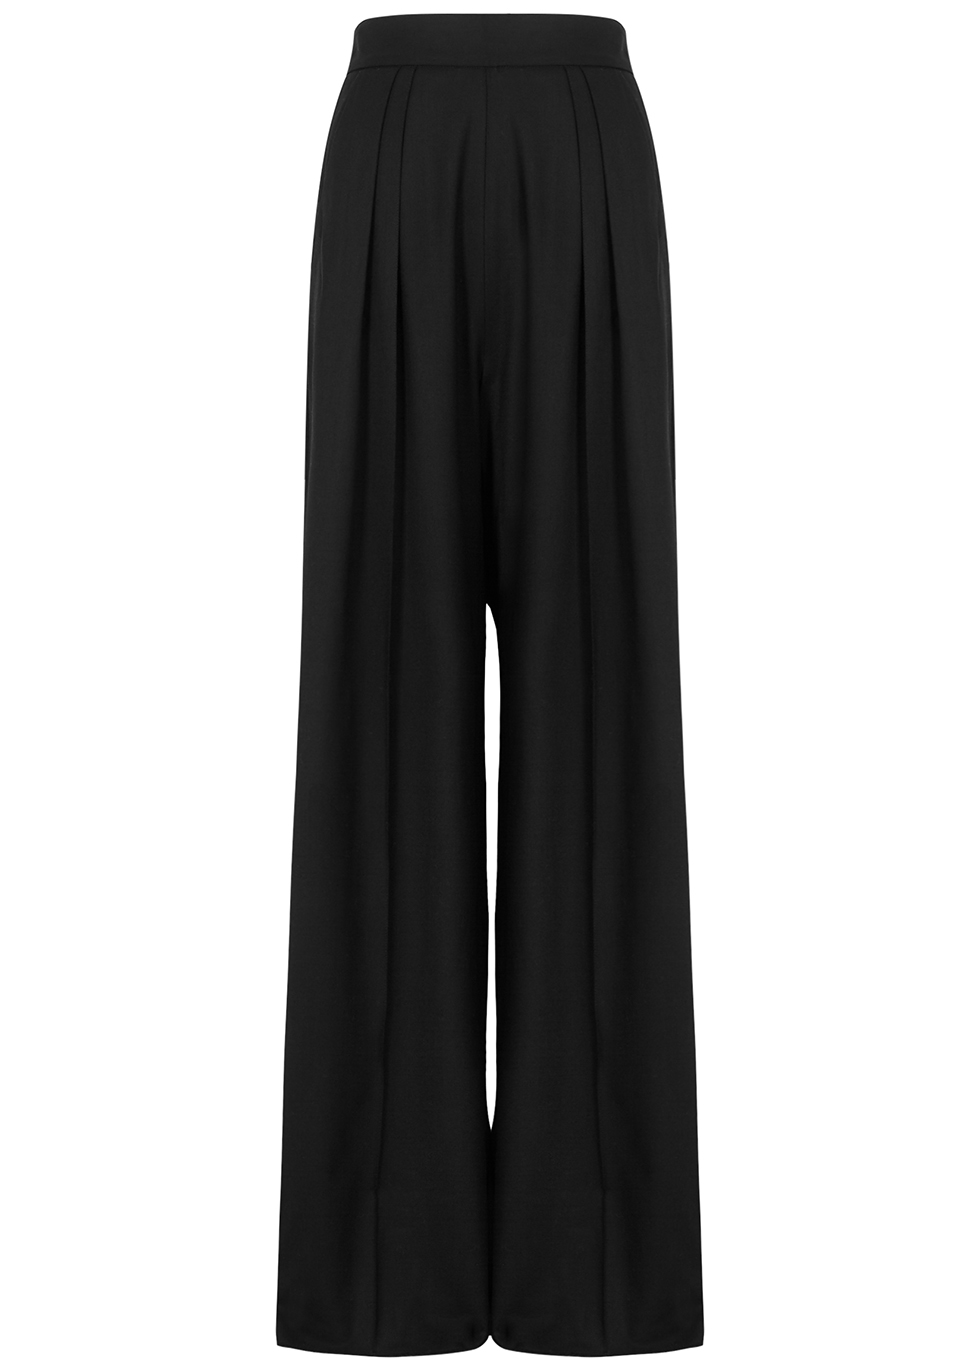 Gretta black wide-leg wool-blend trousers